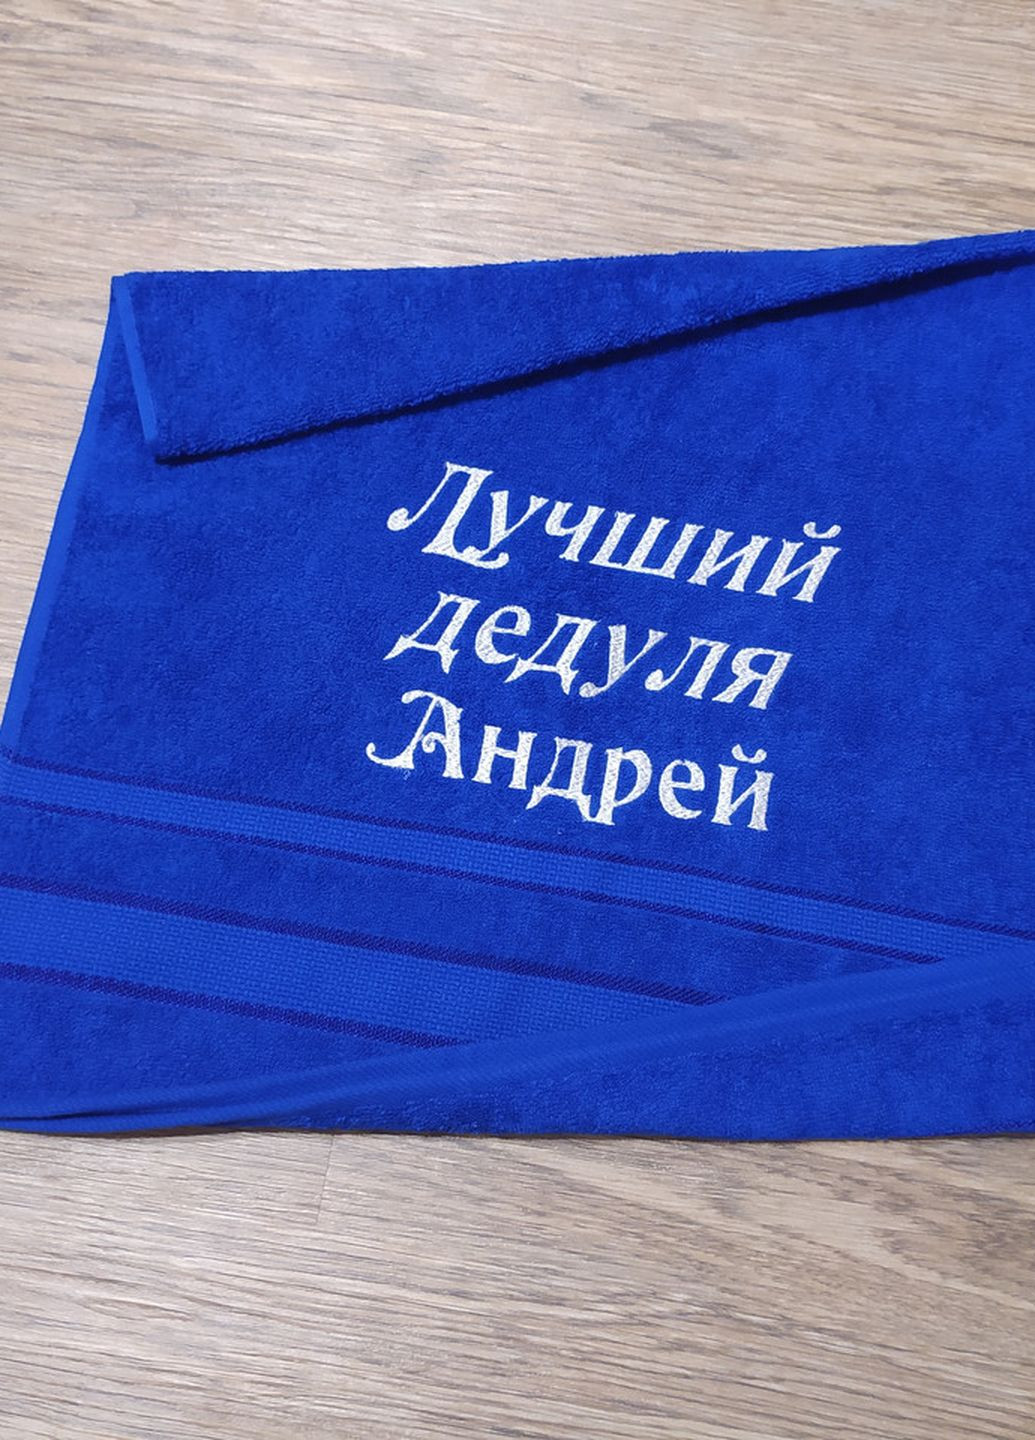 No Brand полотенце с именной вышивкой махровое лицевое 50*90 синий дедушке андрей 00113 однотонный синий производство - Украина